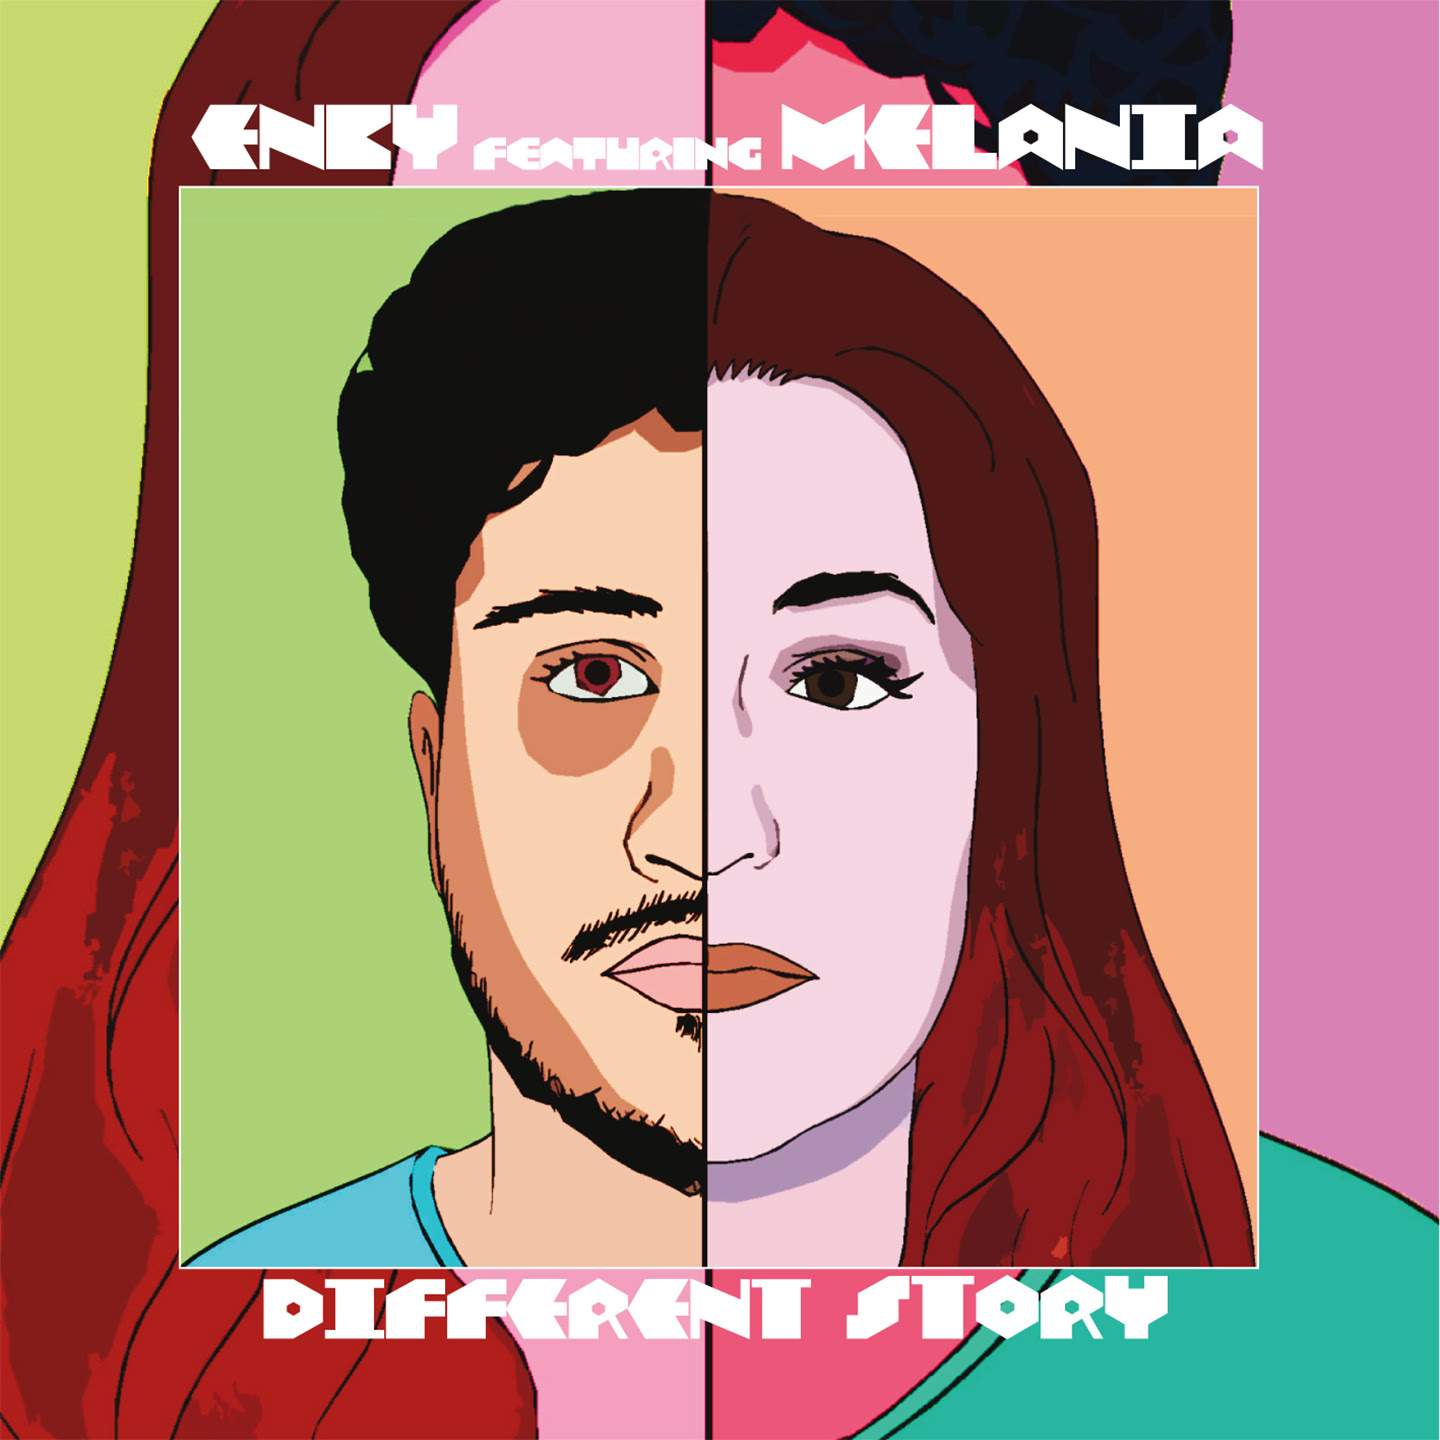 Dal 15 luglio in radio e in digitale “Different Story”, il nuovo singolo di Enby & Melania.